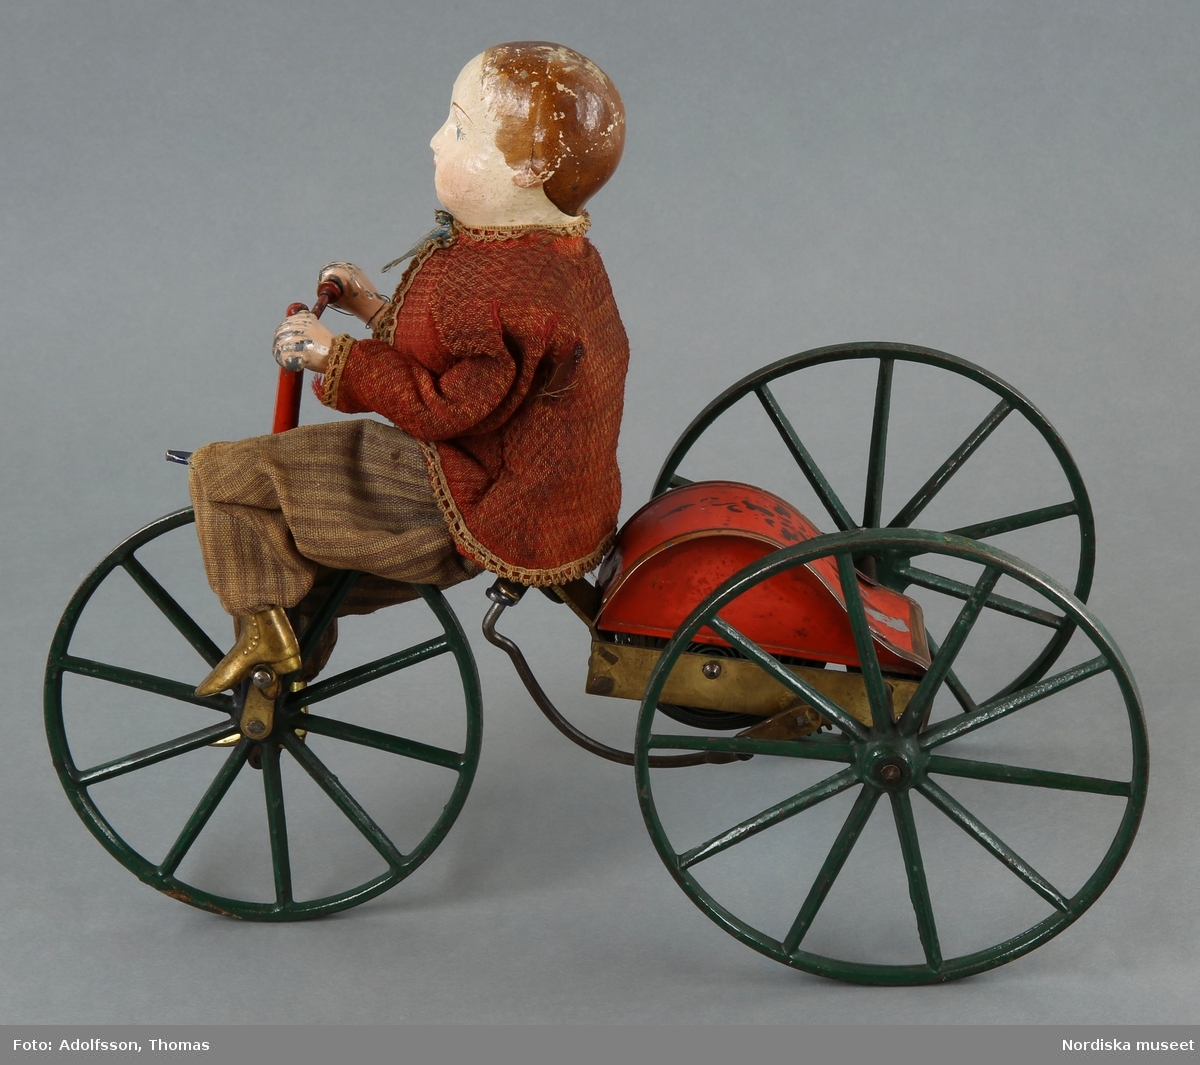 Inventering Sesam 1996-1999:
H 21    L 28 (cm)
Cyklist (a-b), mekanisk leksak, docka med huvud och sköld av papier-mach¿, målade anletsdrag, händer av målad metall samt  skor av mässing. Iklädd närmst röd jacka, beige "skjorta" samt randiga byxor av muslin (1860-tals typ). Kör en trehjulig cykel av metall, lackerad i grönt, blått och rött (a). Nyckel för drivverkets uppdragning (b) (L 6,5 cm).
Möjligen "Stevens & Brown Manufacturing Co." (Amerika), jmf. inv.nr 255.530 samt 299.973.
Charlotta Dobson Hoffman jan 1998